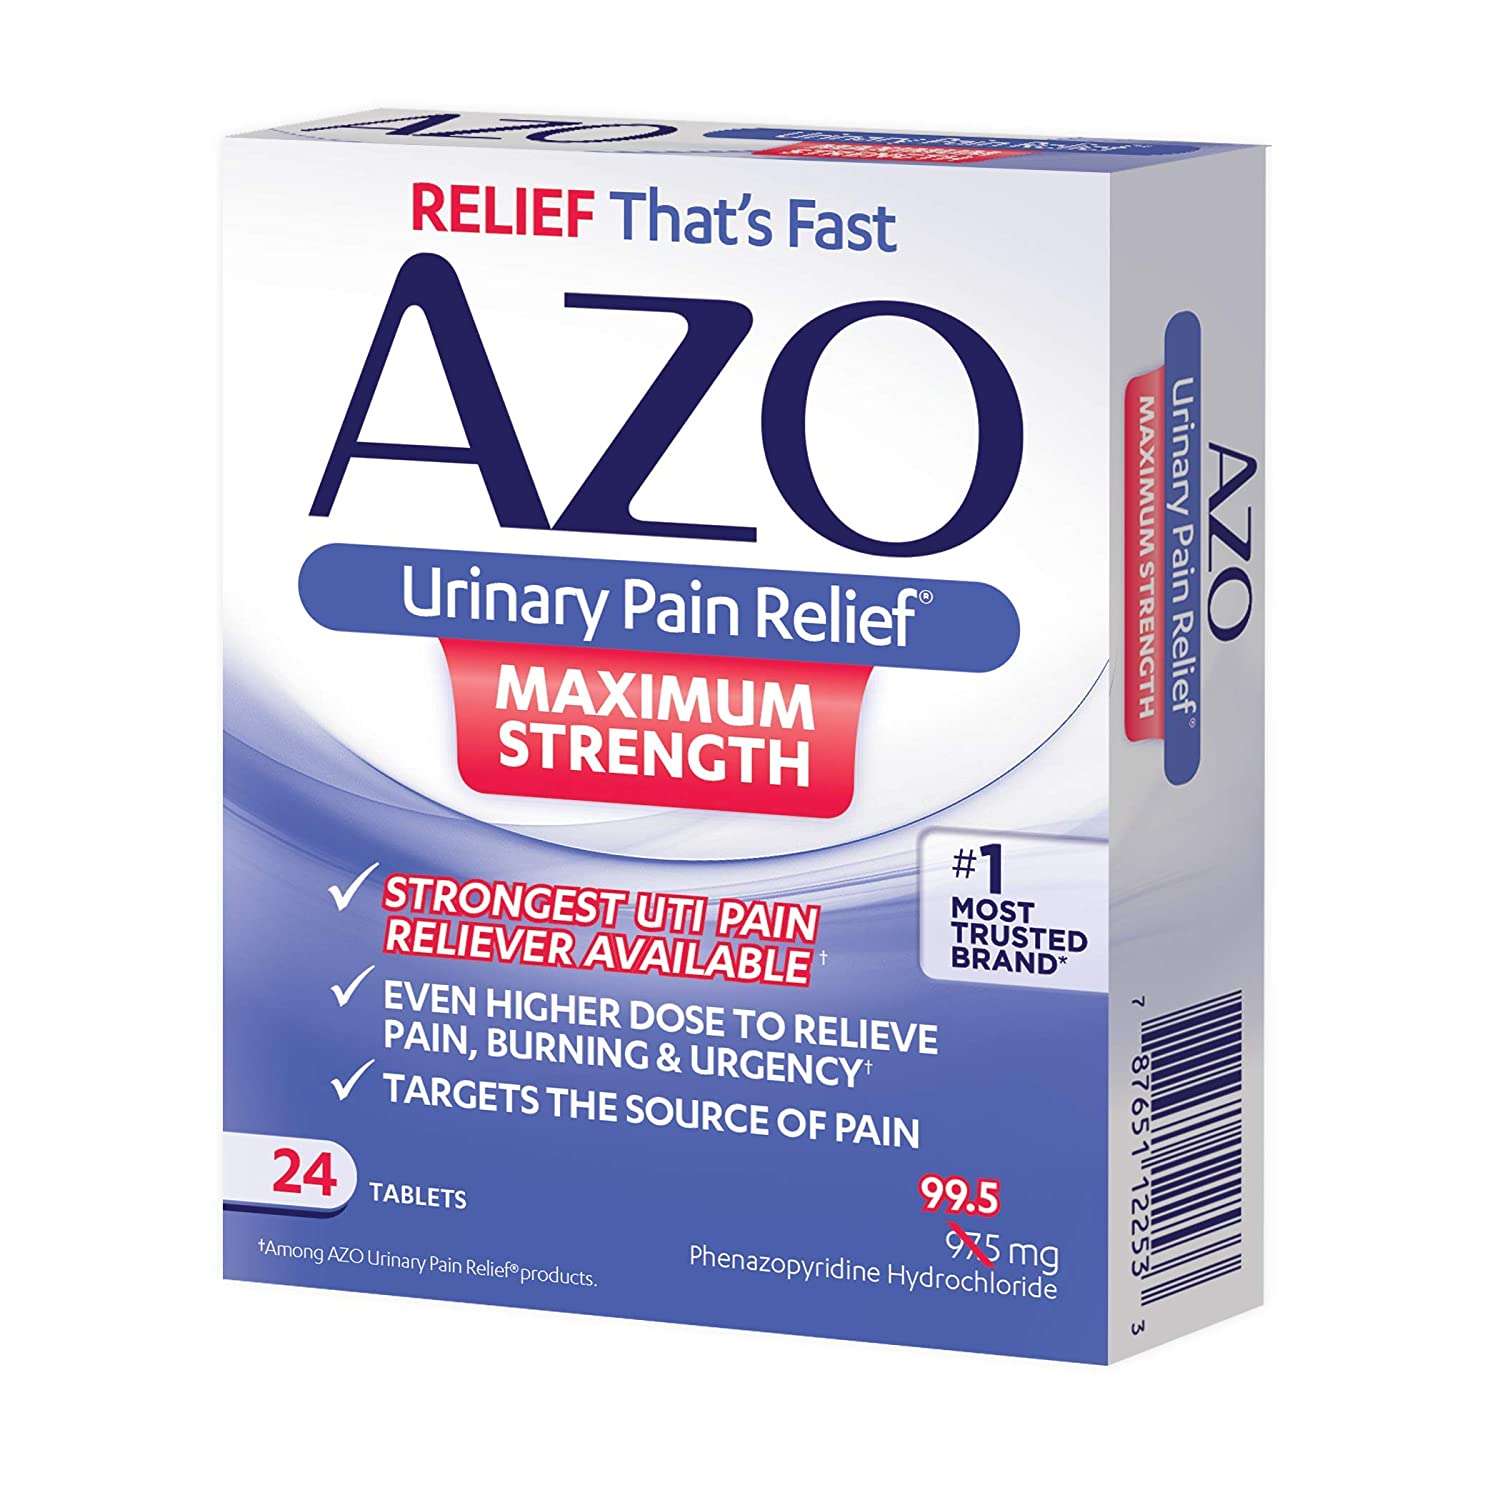 azo urinary pain relief reviews alqurumresort com